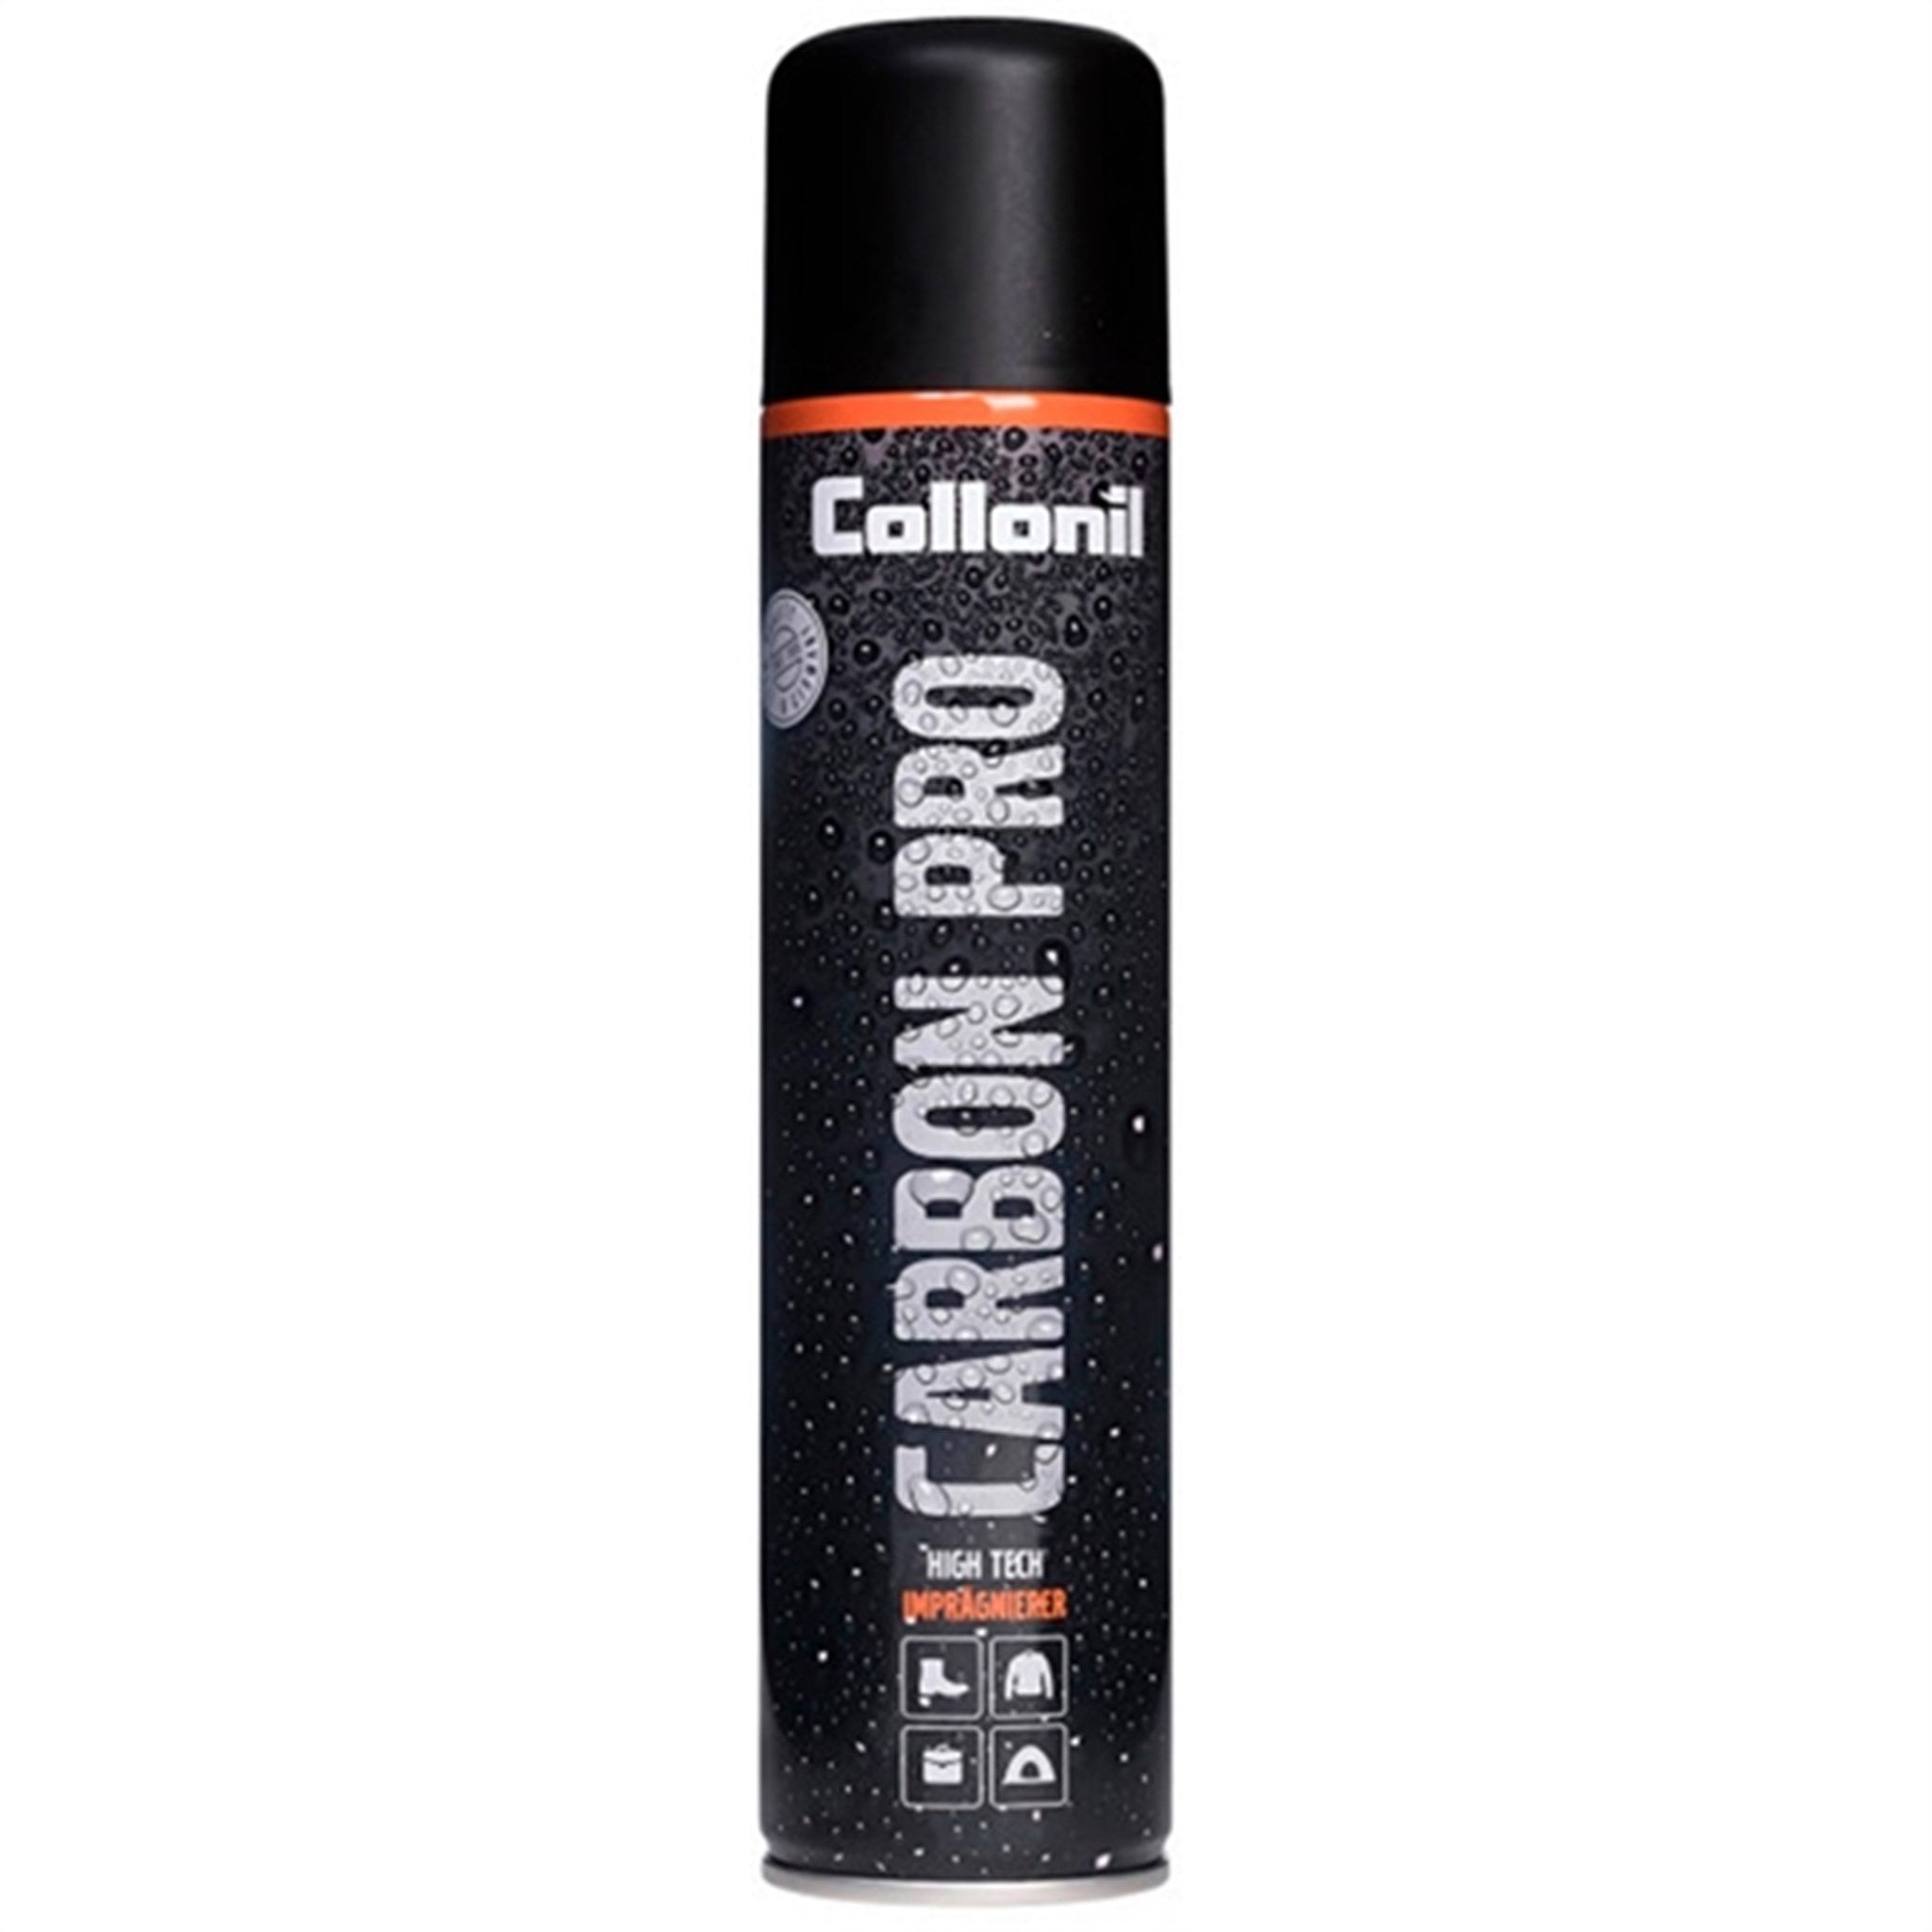 Collonil Carbon Pro Imprægnering 300 ml